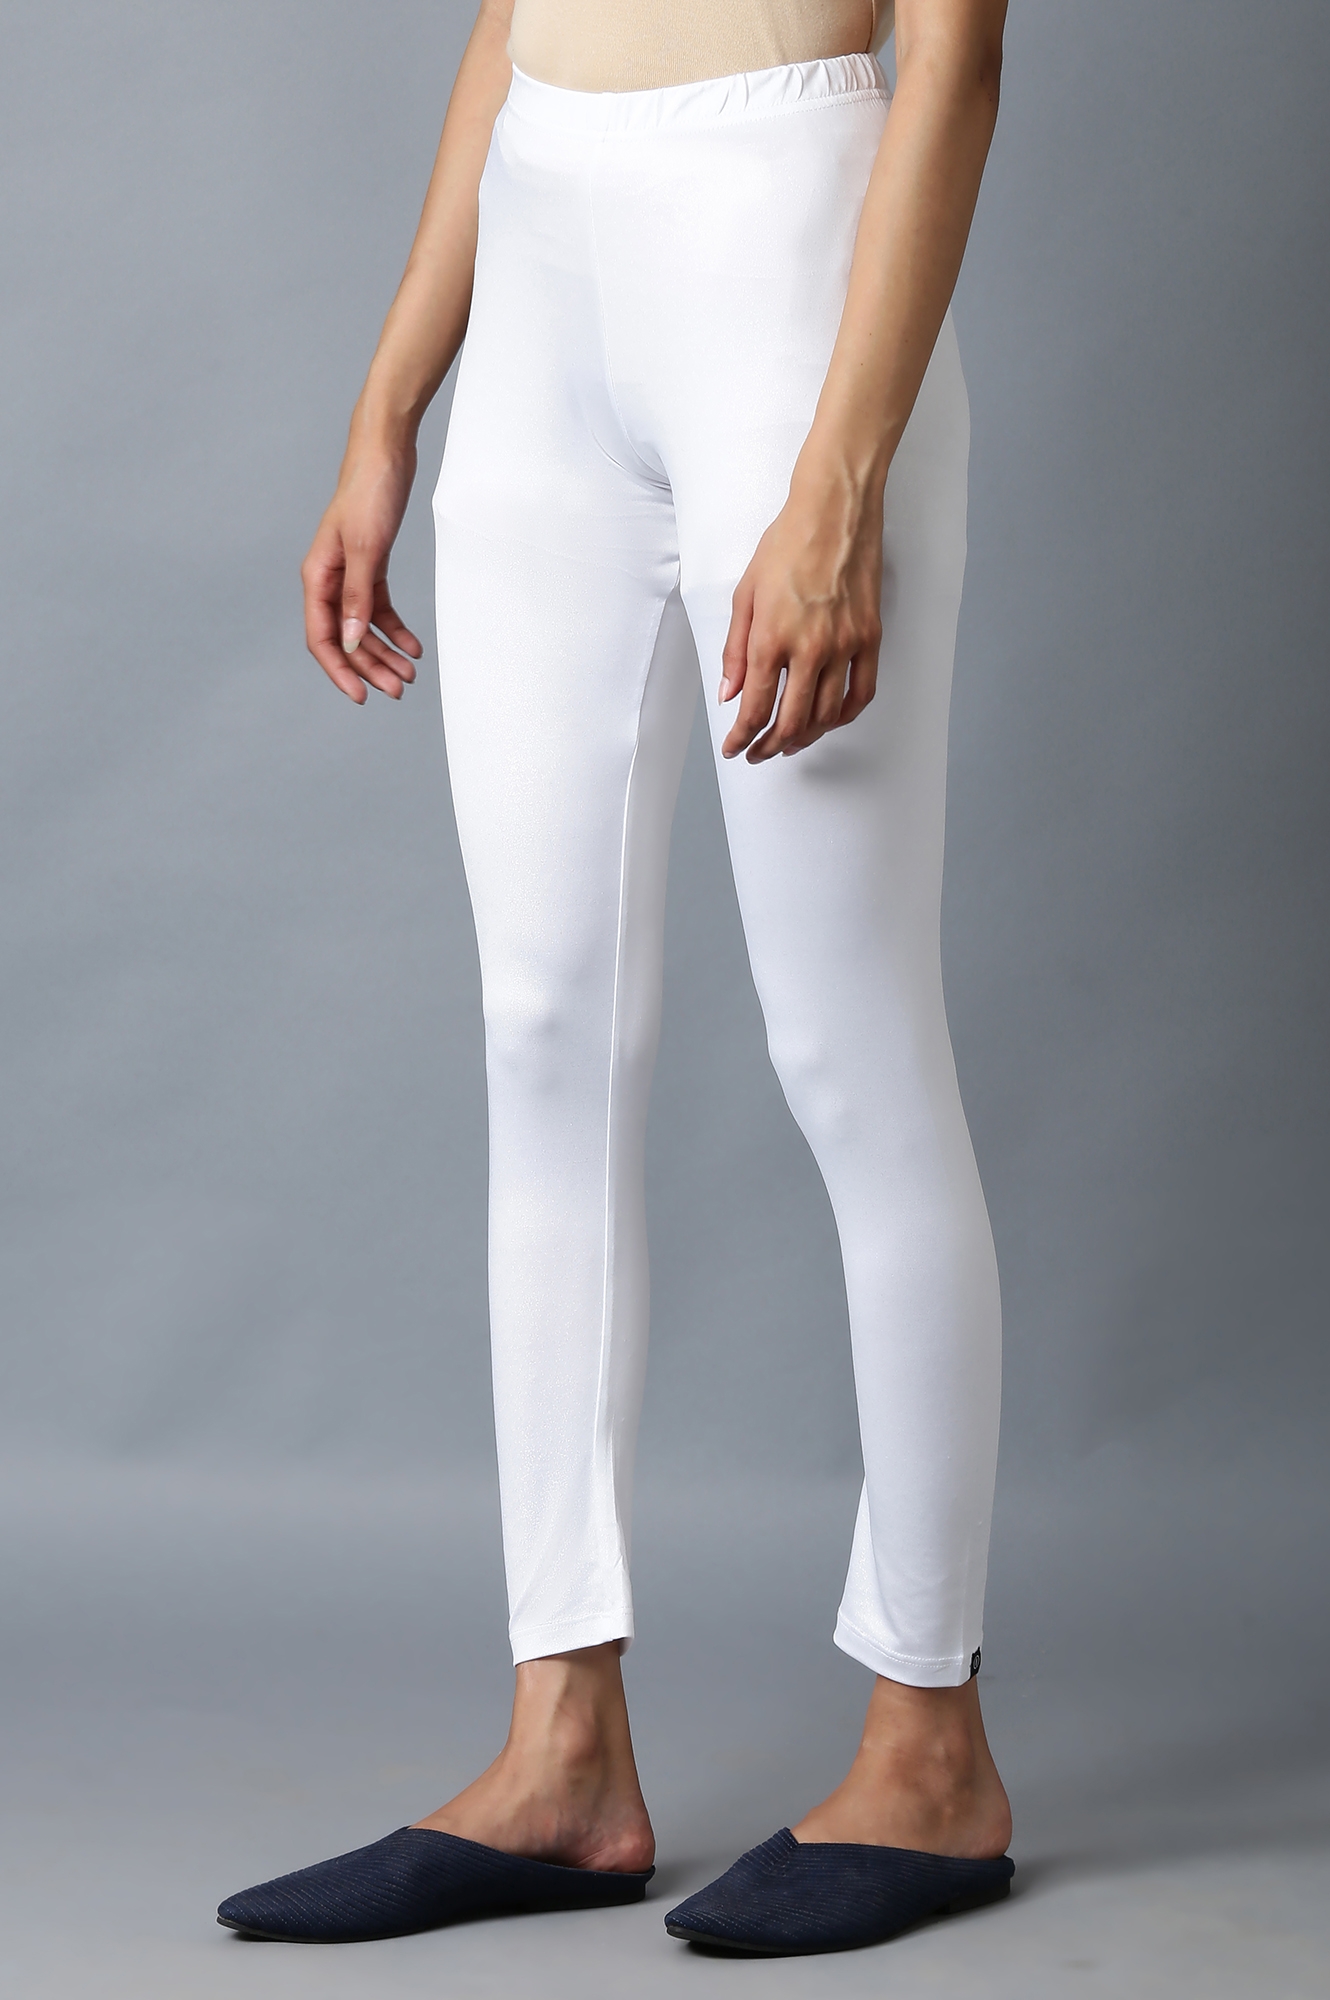 Elleven | Shimmer White Snug Fit Tights 2